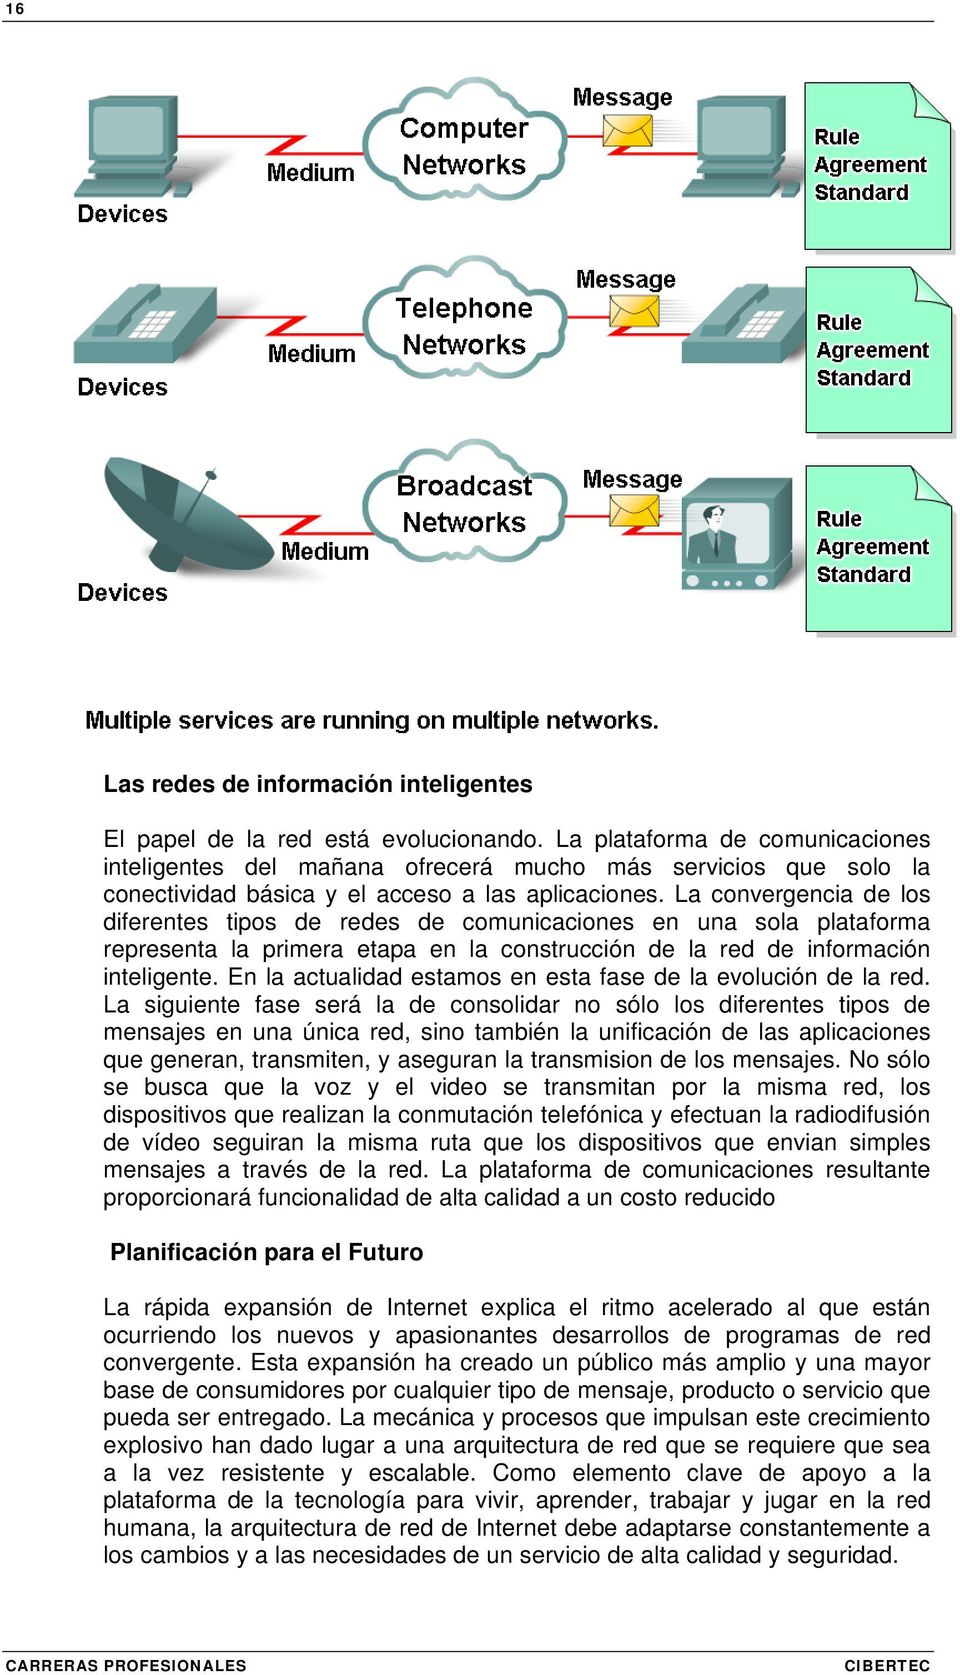 La convergencia de los diferentes tipos de redes de comunicaciones en una sola plataforma representa la primera etapa en la construcción de la red de información inteligente.